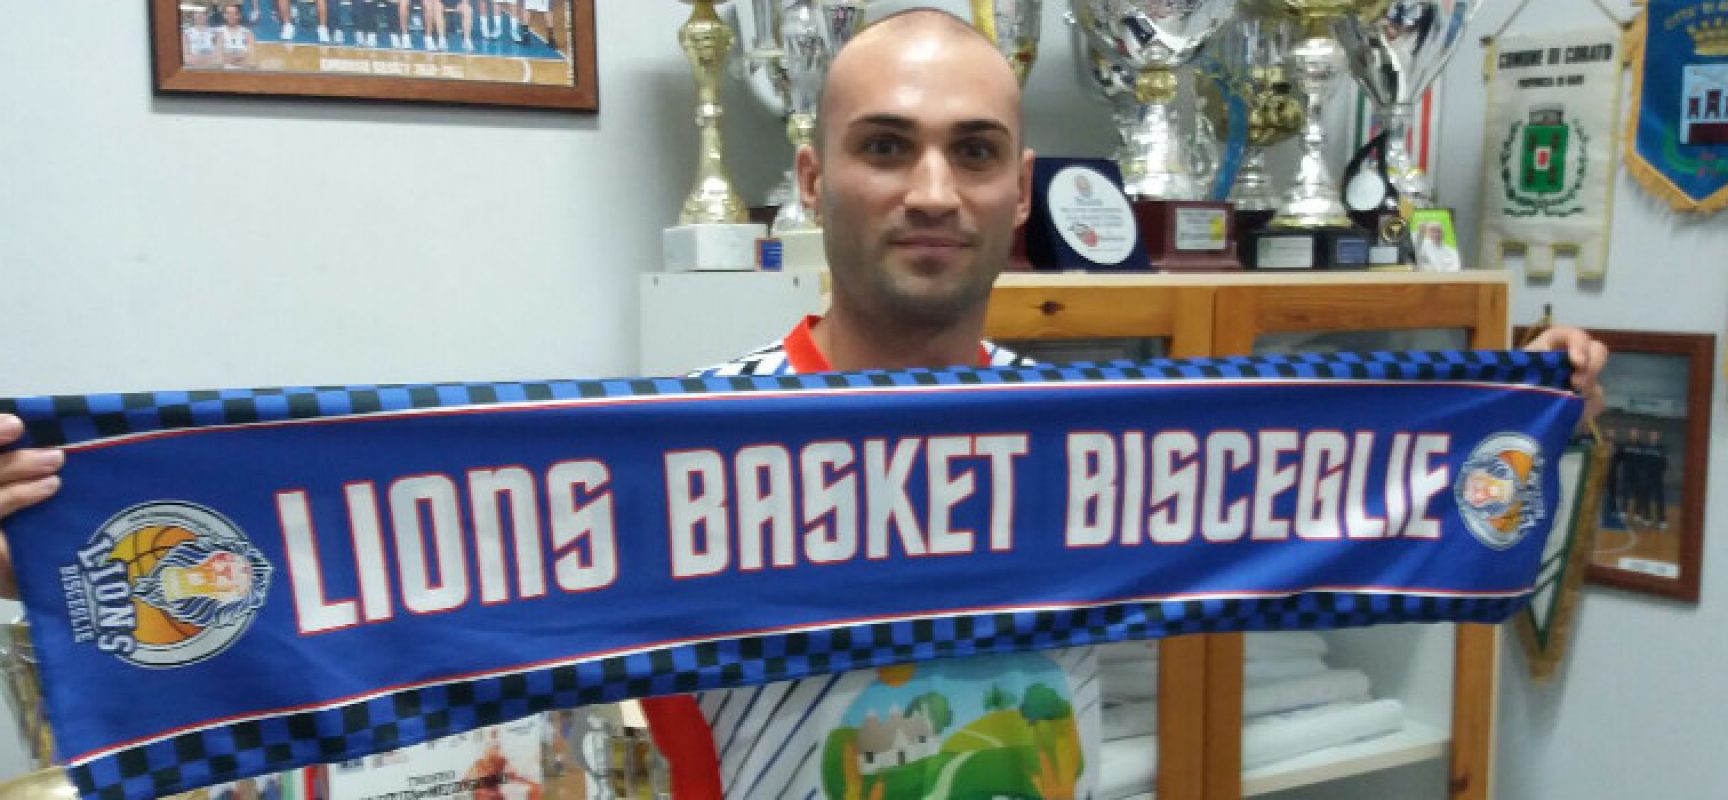 Basket, Simone Bonfiglio nuovo playmaker della Di Pinto Panifici